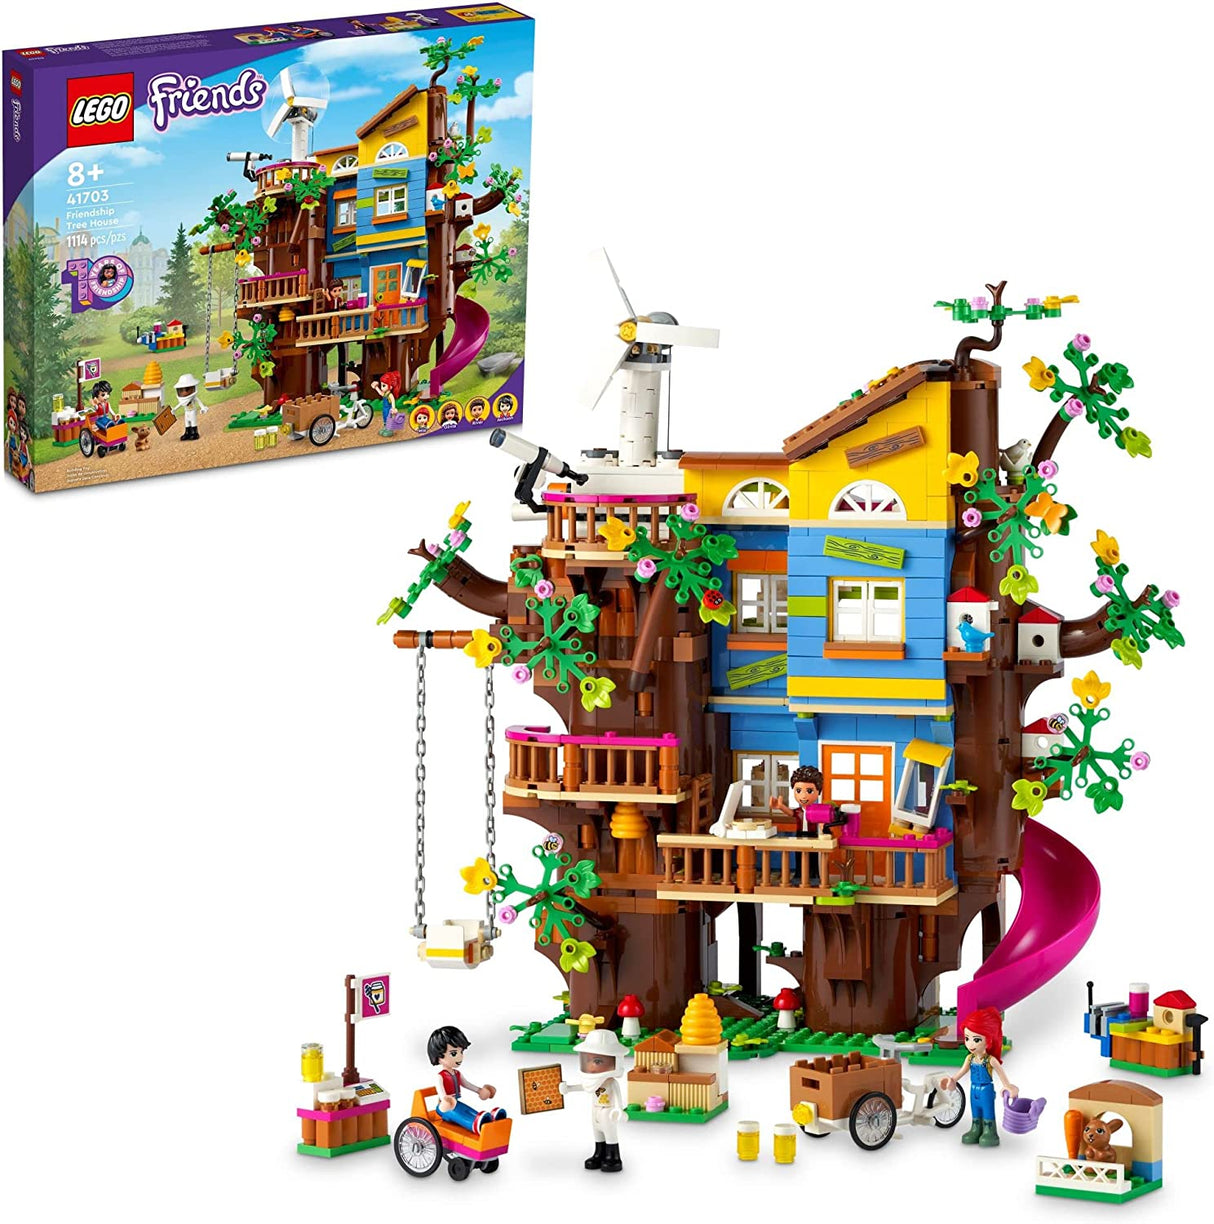 LEGO Friends Casa del árbol de la amistad 41703  (1114 piezas)